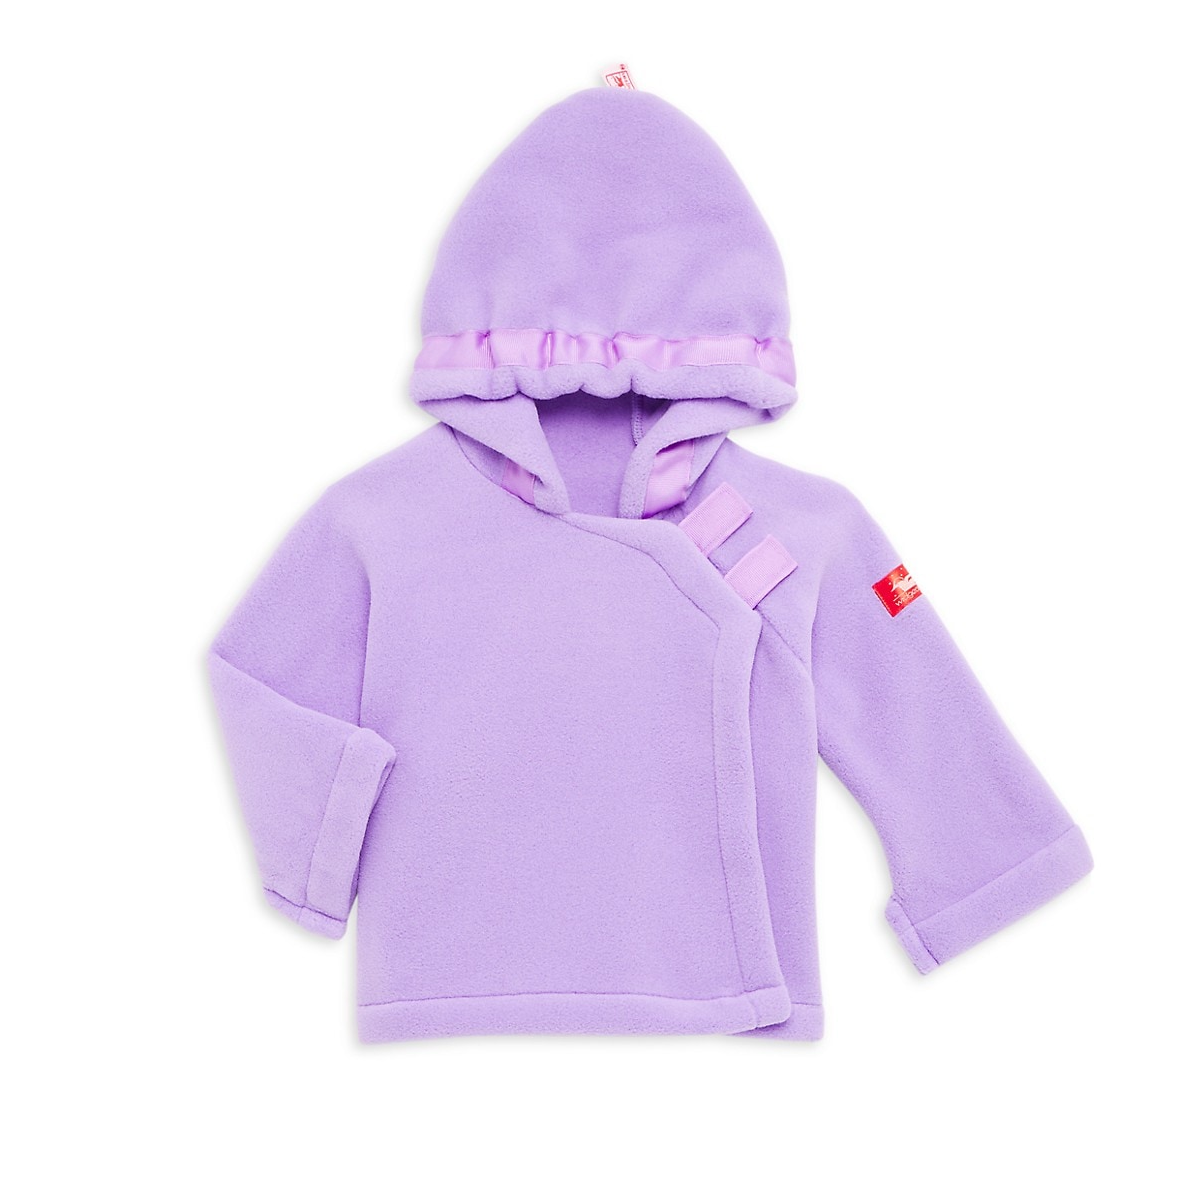 Warmplus Favorite Jacket-Light Pink/Lavender (Toddler/Kid)